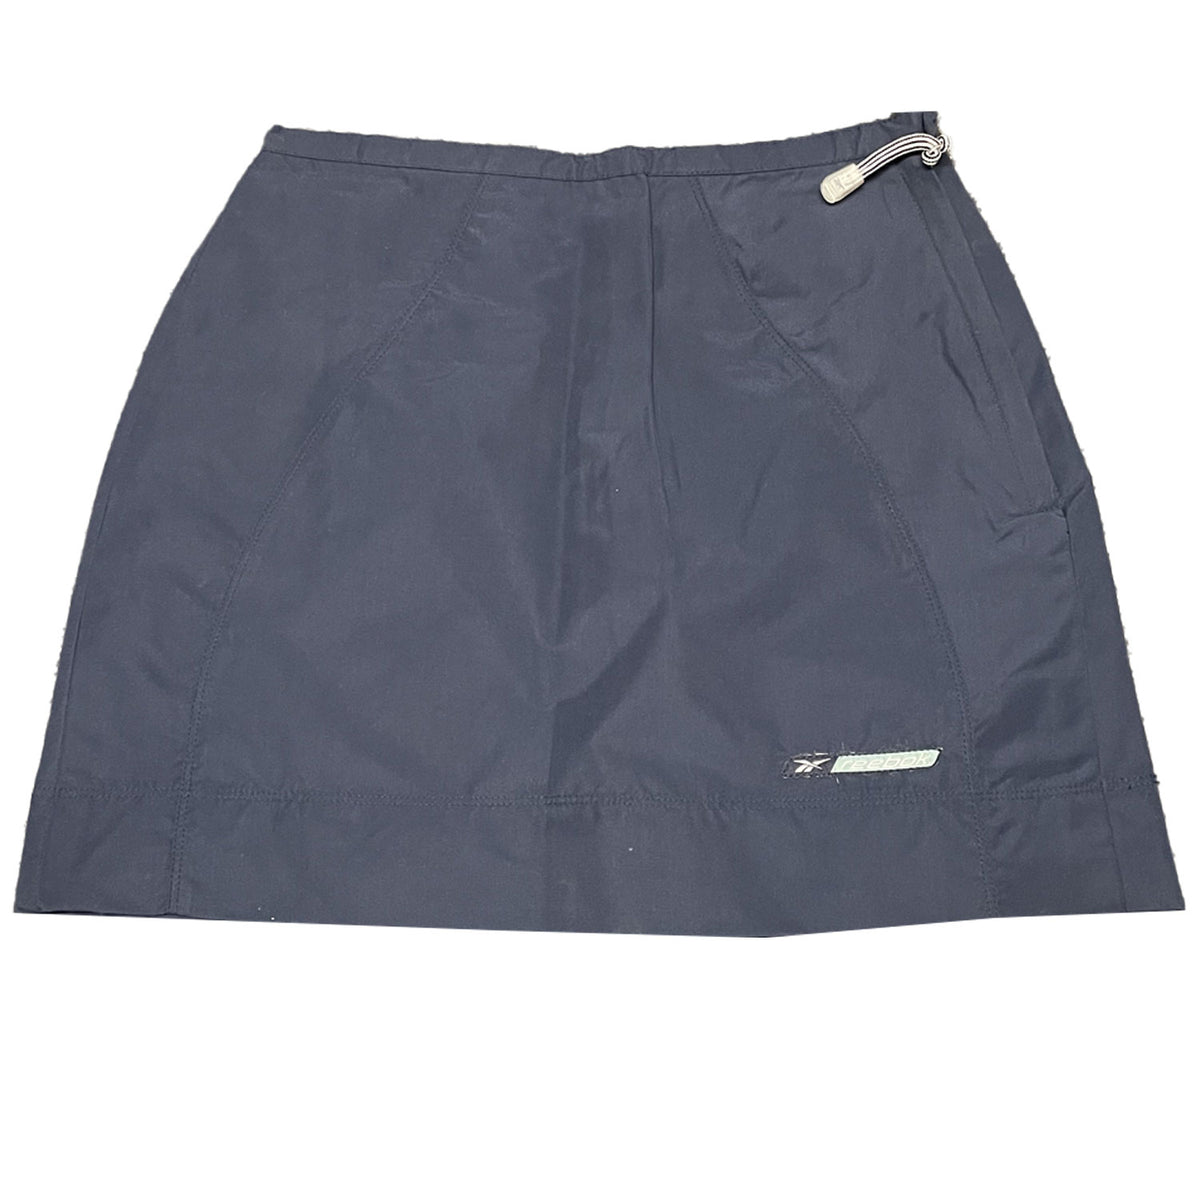 Reebok Womens Freestyle Athletics Skirt - Navy - UK Size 12